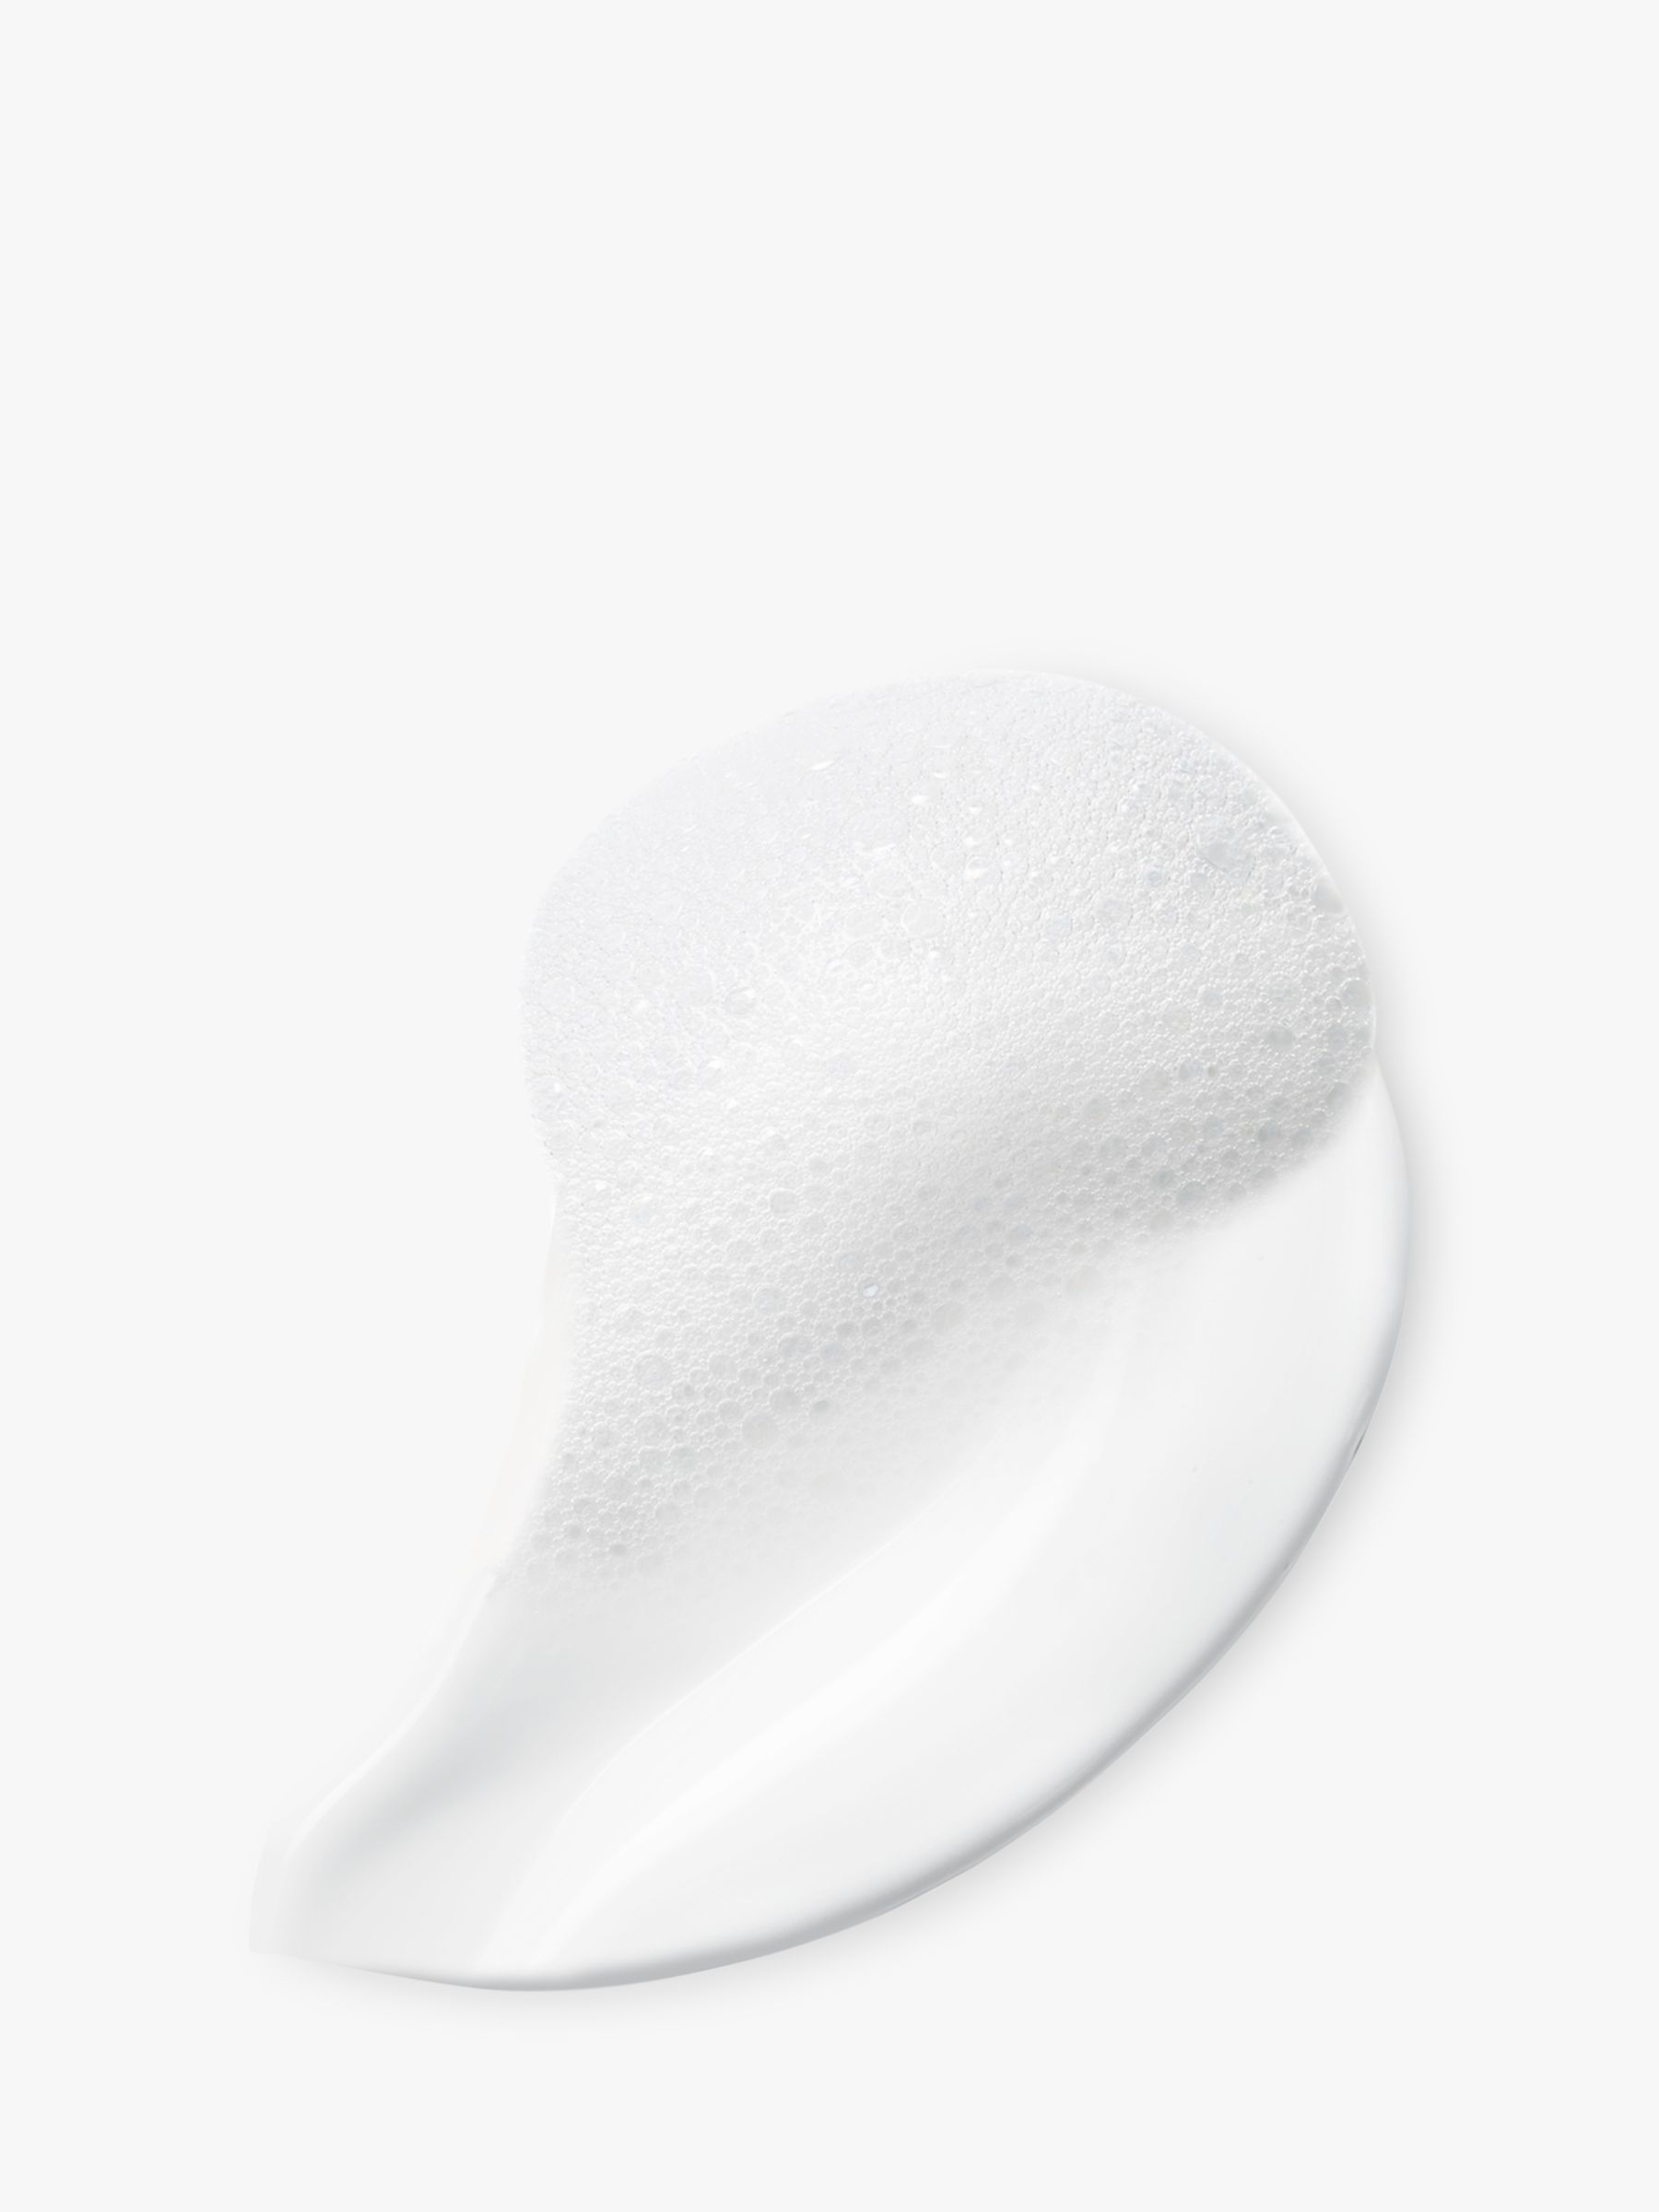 Lancôme Clarifique Pore Refining Cleansing Foam, 125ml 2